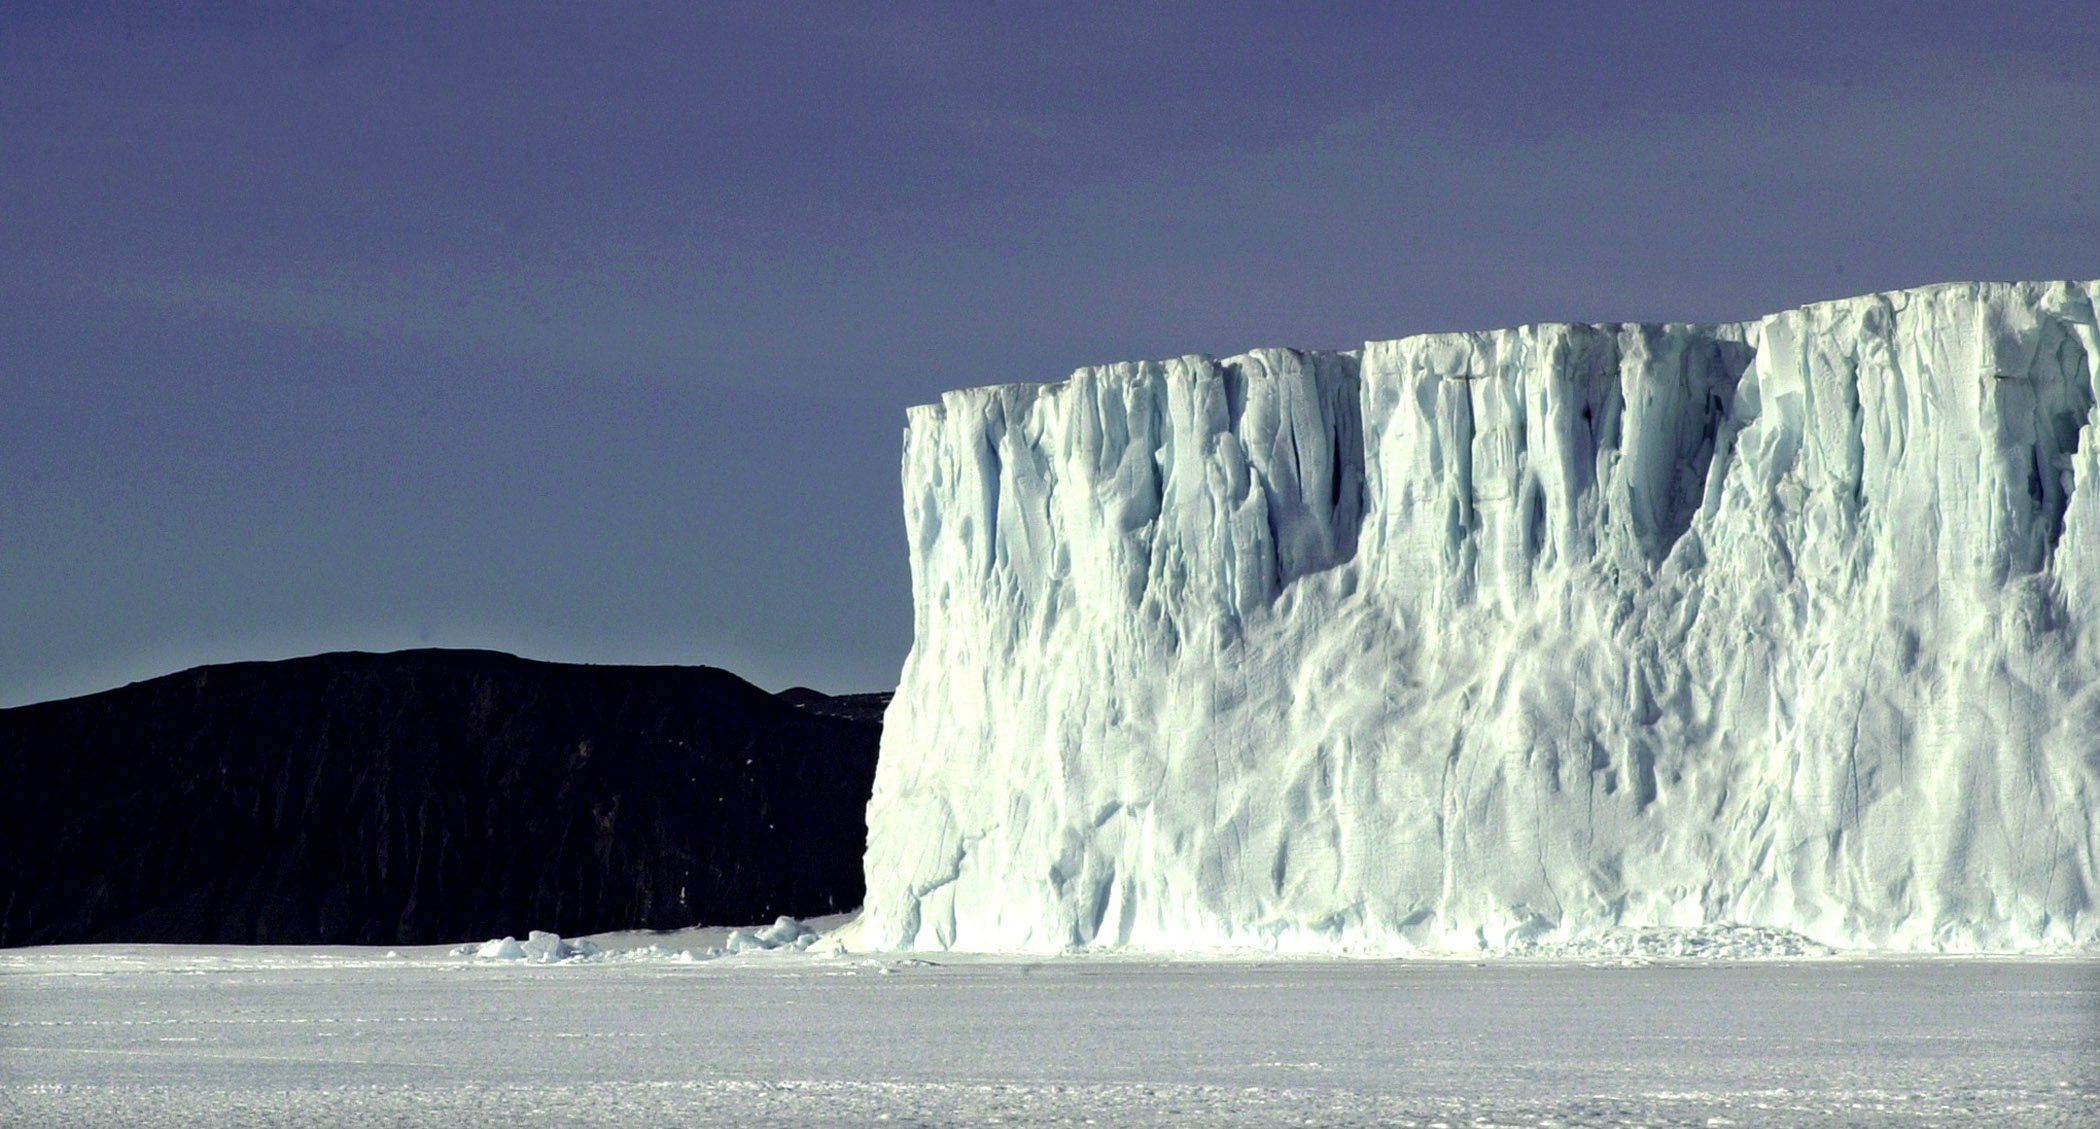 A large glacier extends into a frozen sea.